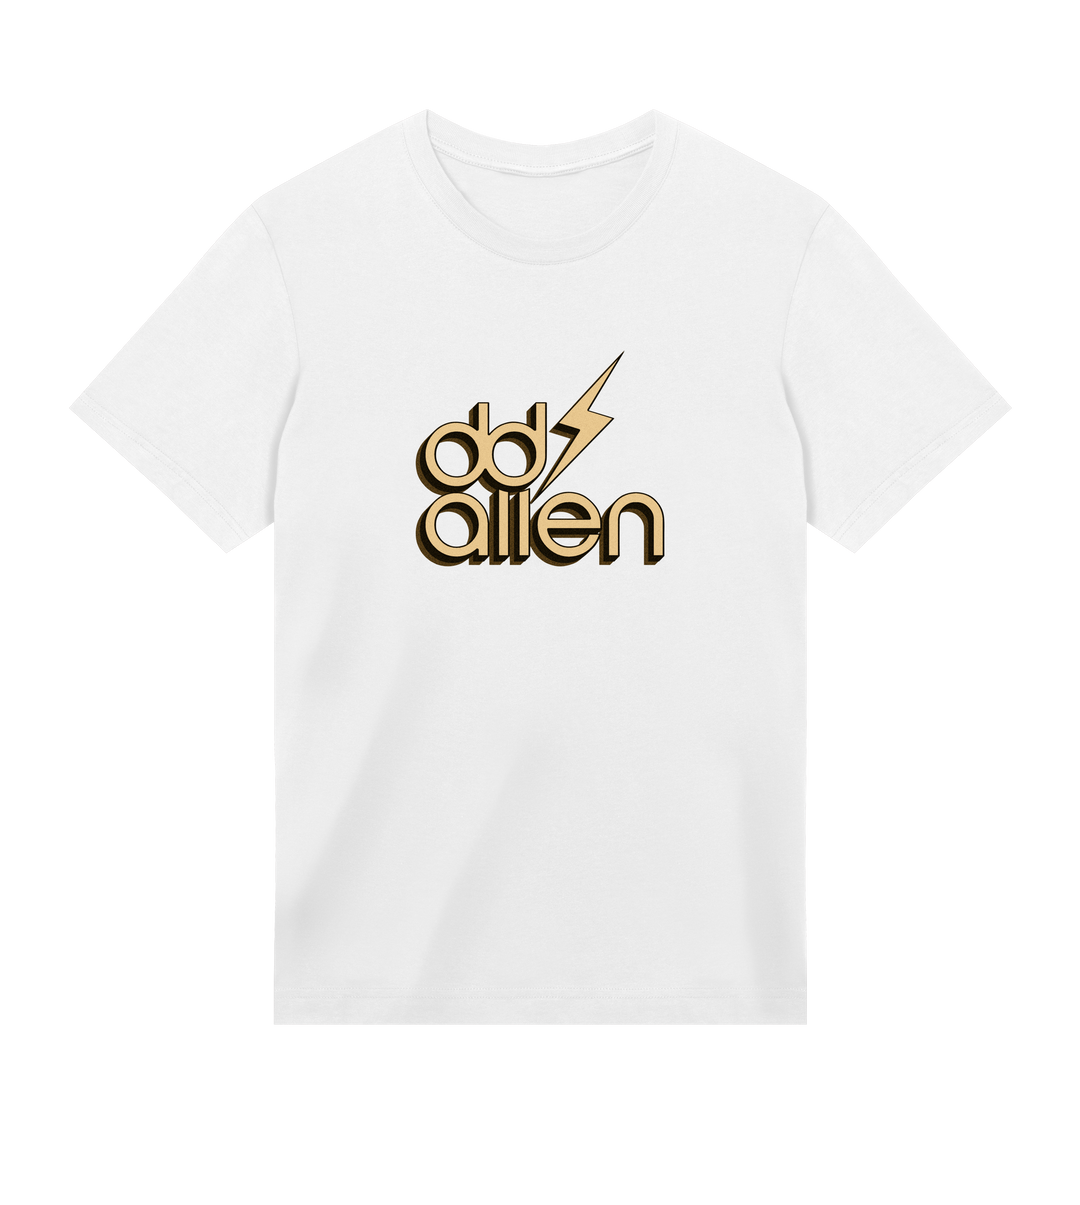 DD Allen - Gold Logo T